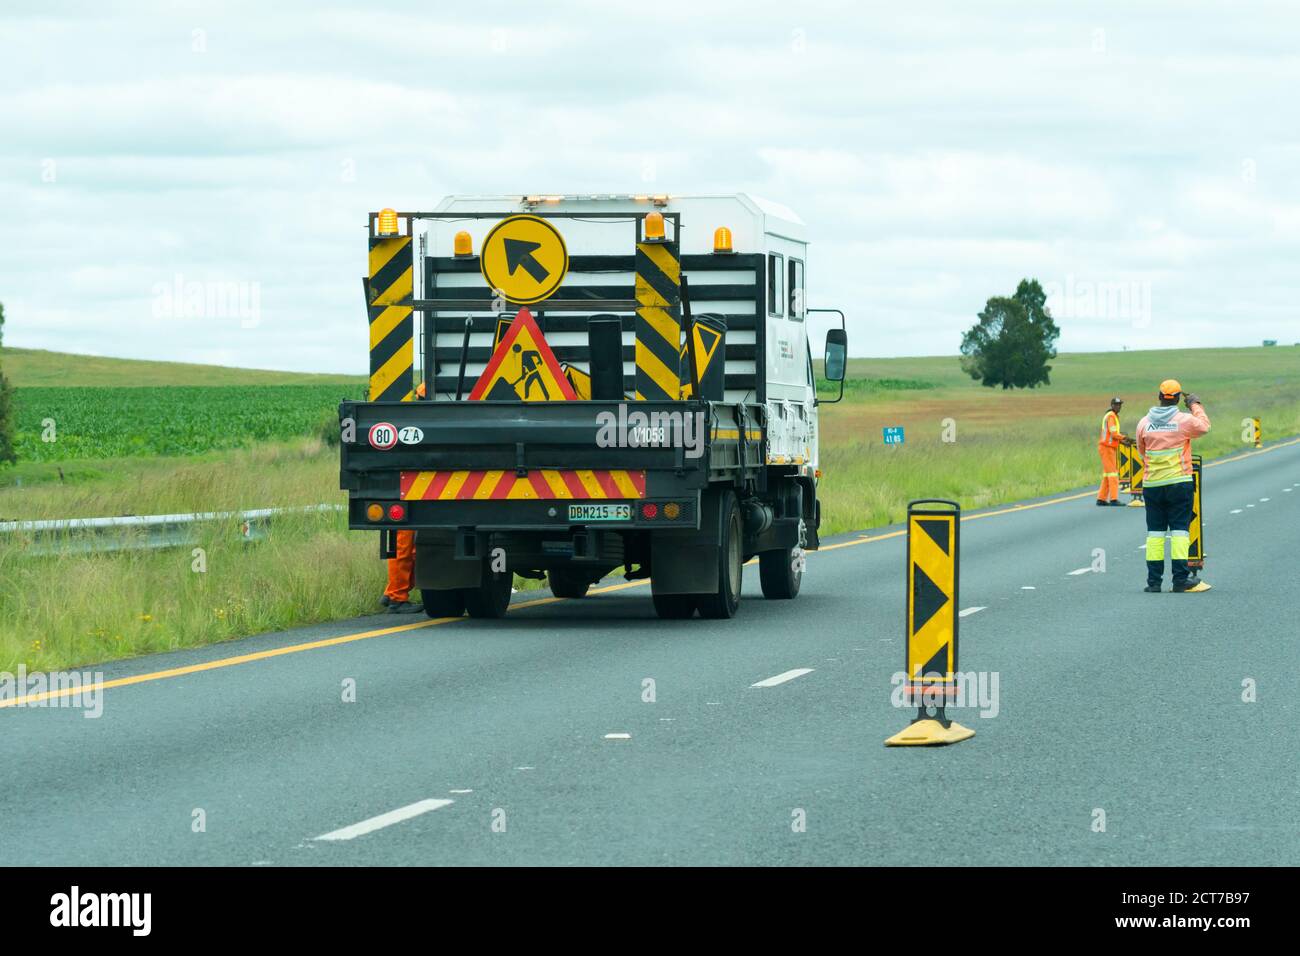 Lavori su strada con camion e cartelli stradali nella provincia di Gauteng, Sud Africa concetto di manutenzione stradale e riparazione di infrastrutture Foto Stock